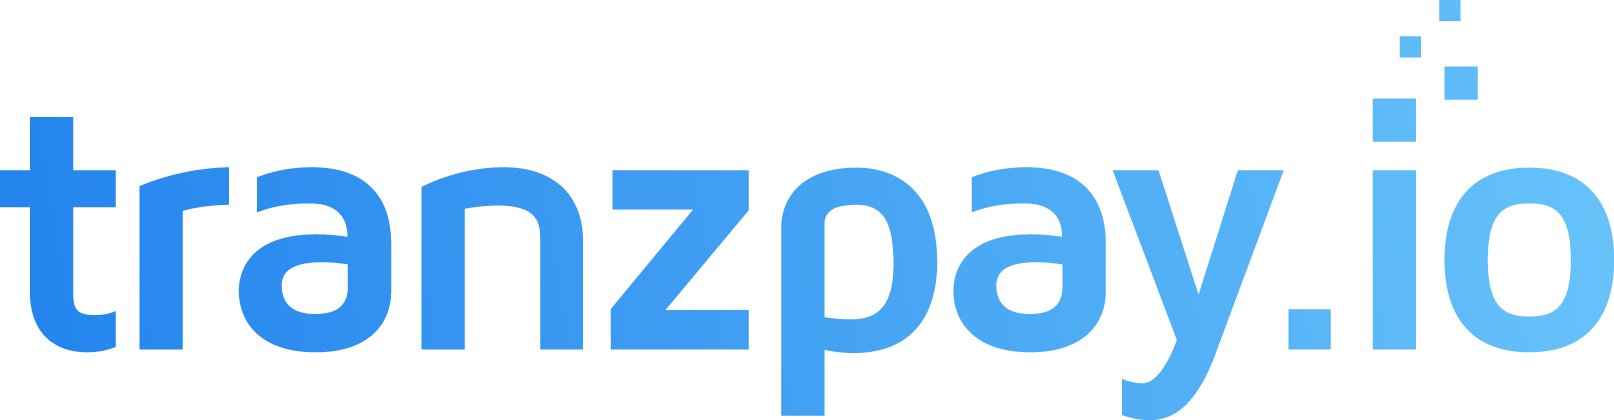 Tranzpay logo transparent